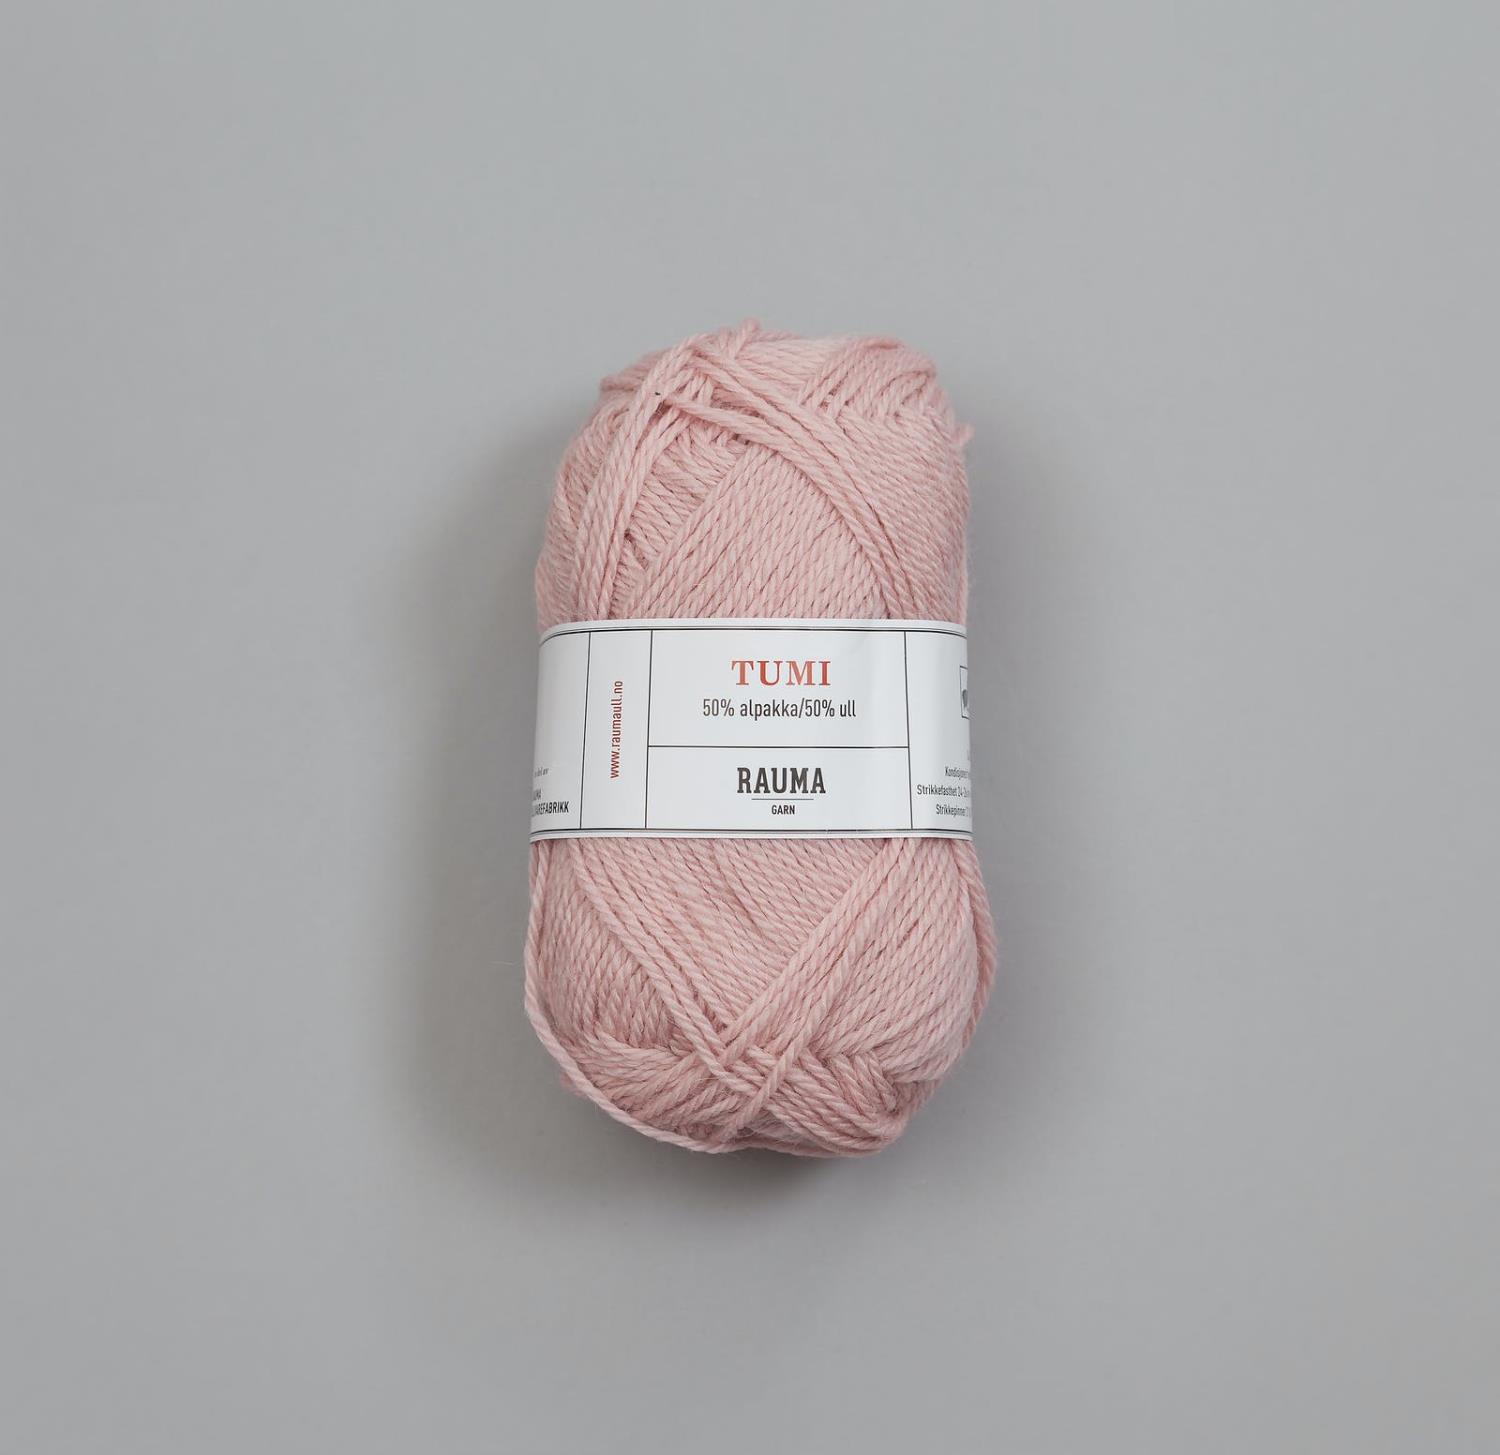 3532 Tumi - lys rosa